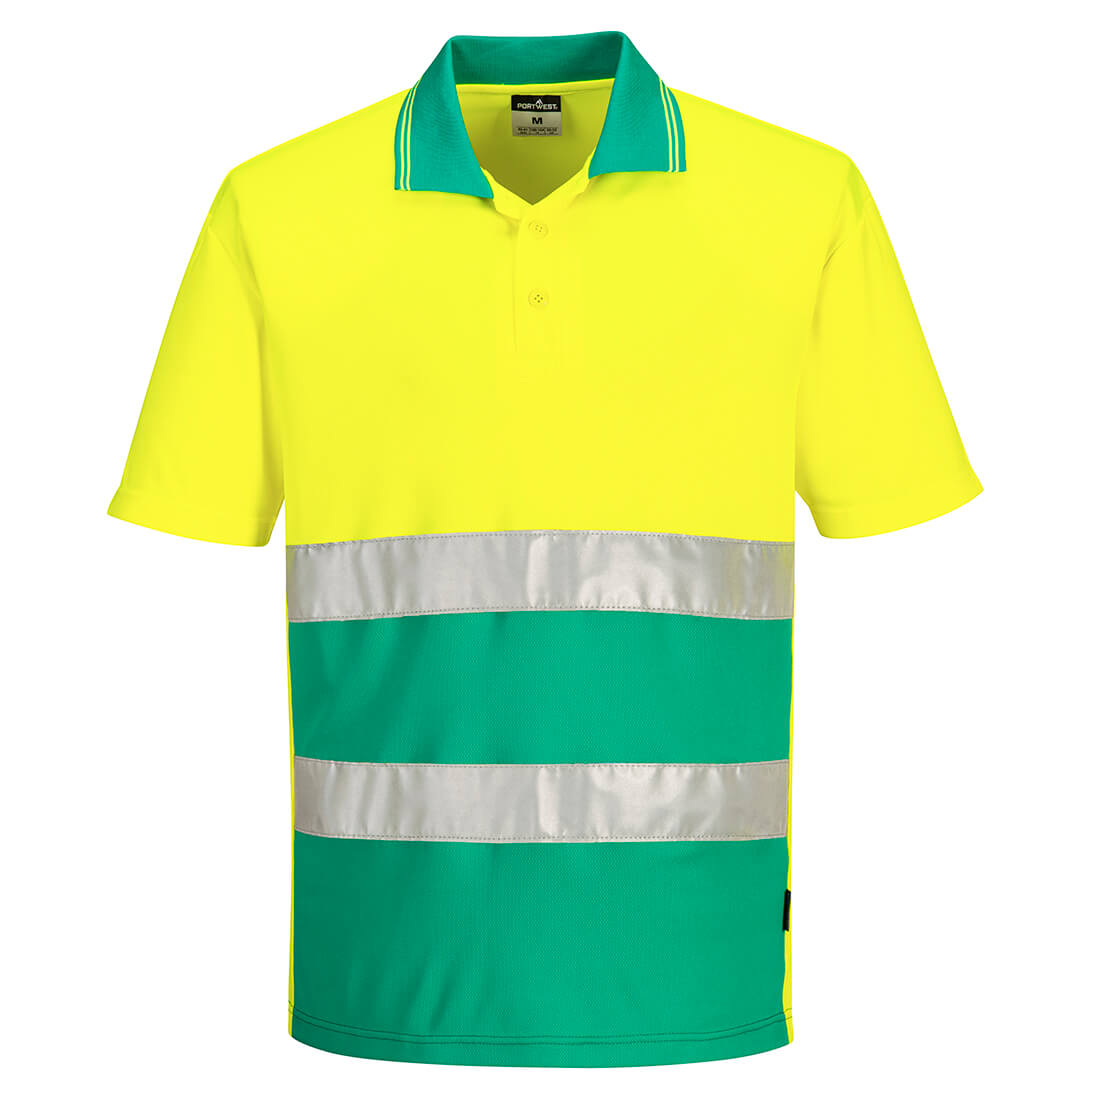 Portwest Hi-Vis Lightweight Contrast Polo Shirt Short Sleeved